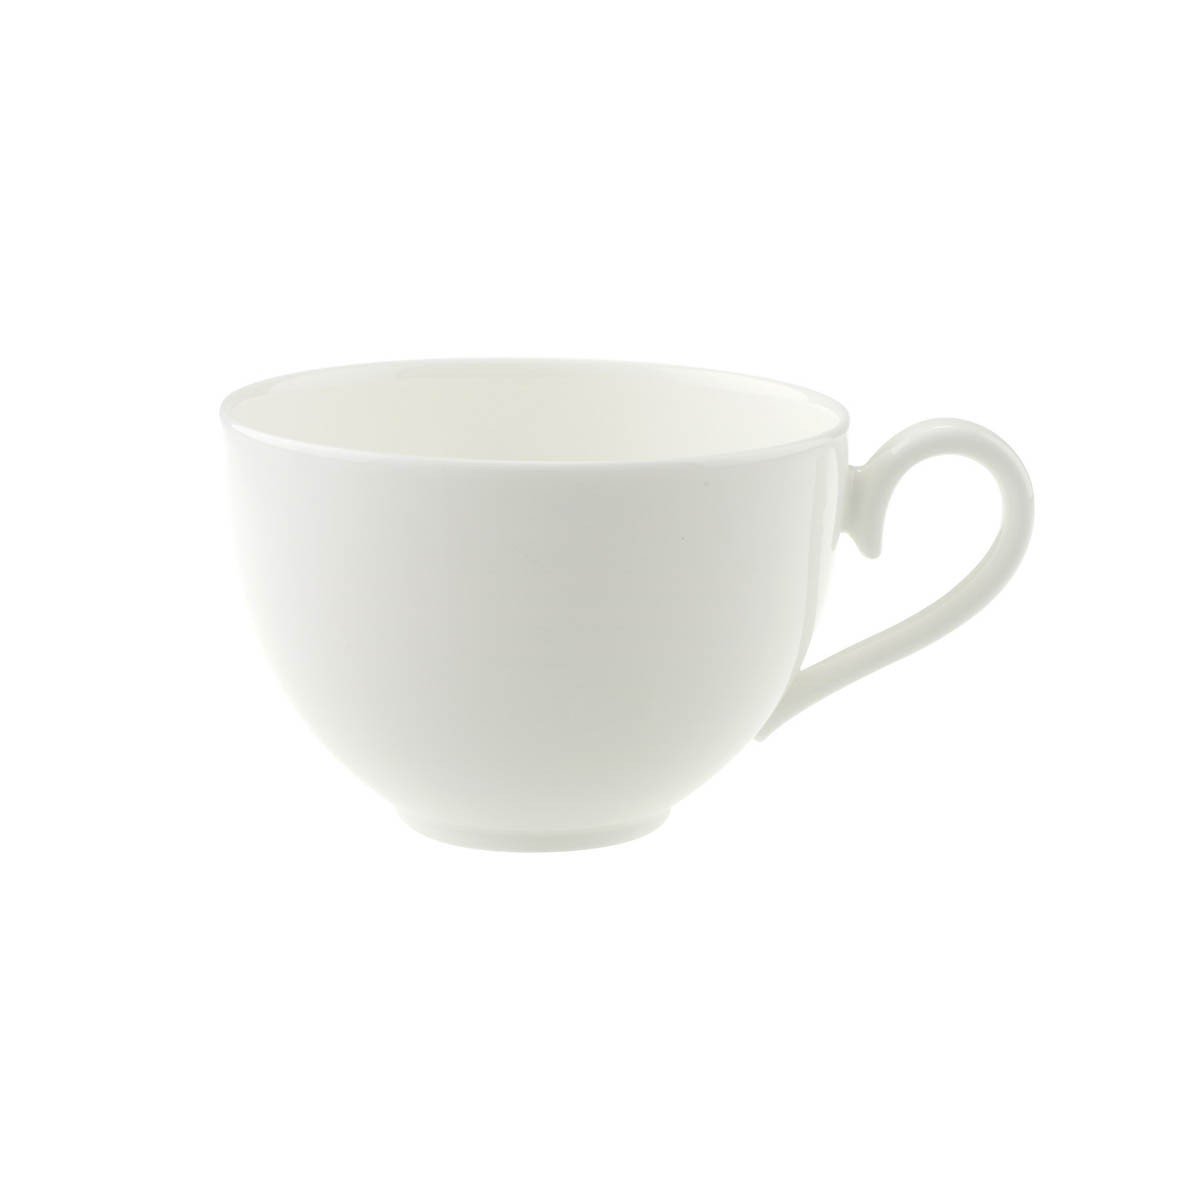 Villeroy & Boch zestaw do kawy Royal / wysokiej jakości porcelana w ponadczasowym wzorze / odpowiedni dla maksymalnie 6 osób 1044121300